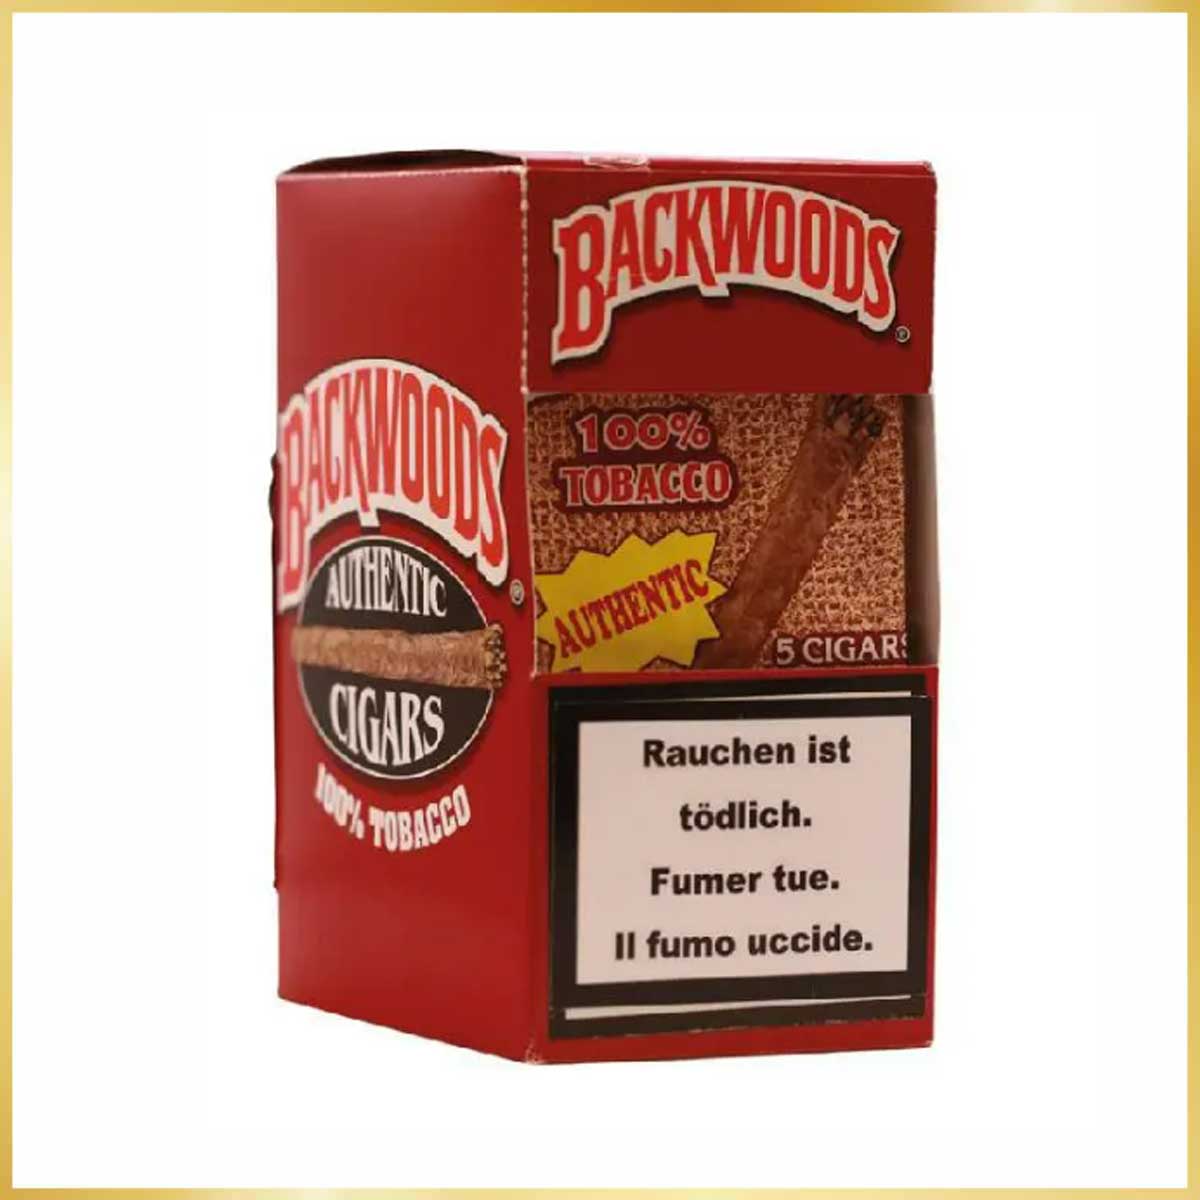 Feuille de cigare à rouler Backwoods Authentic